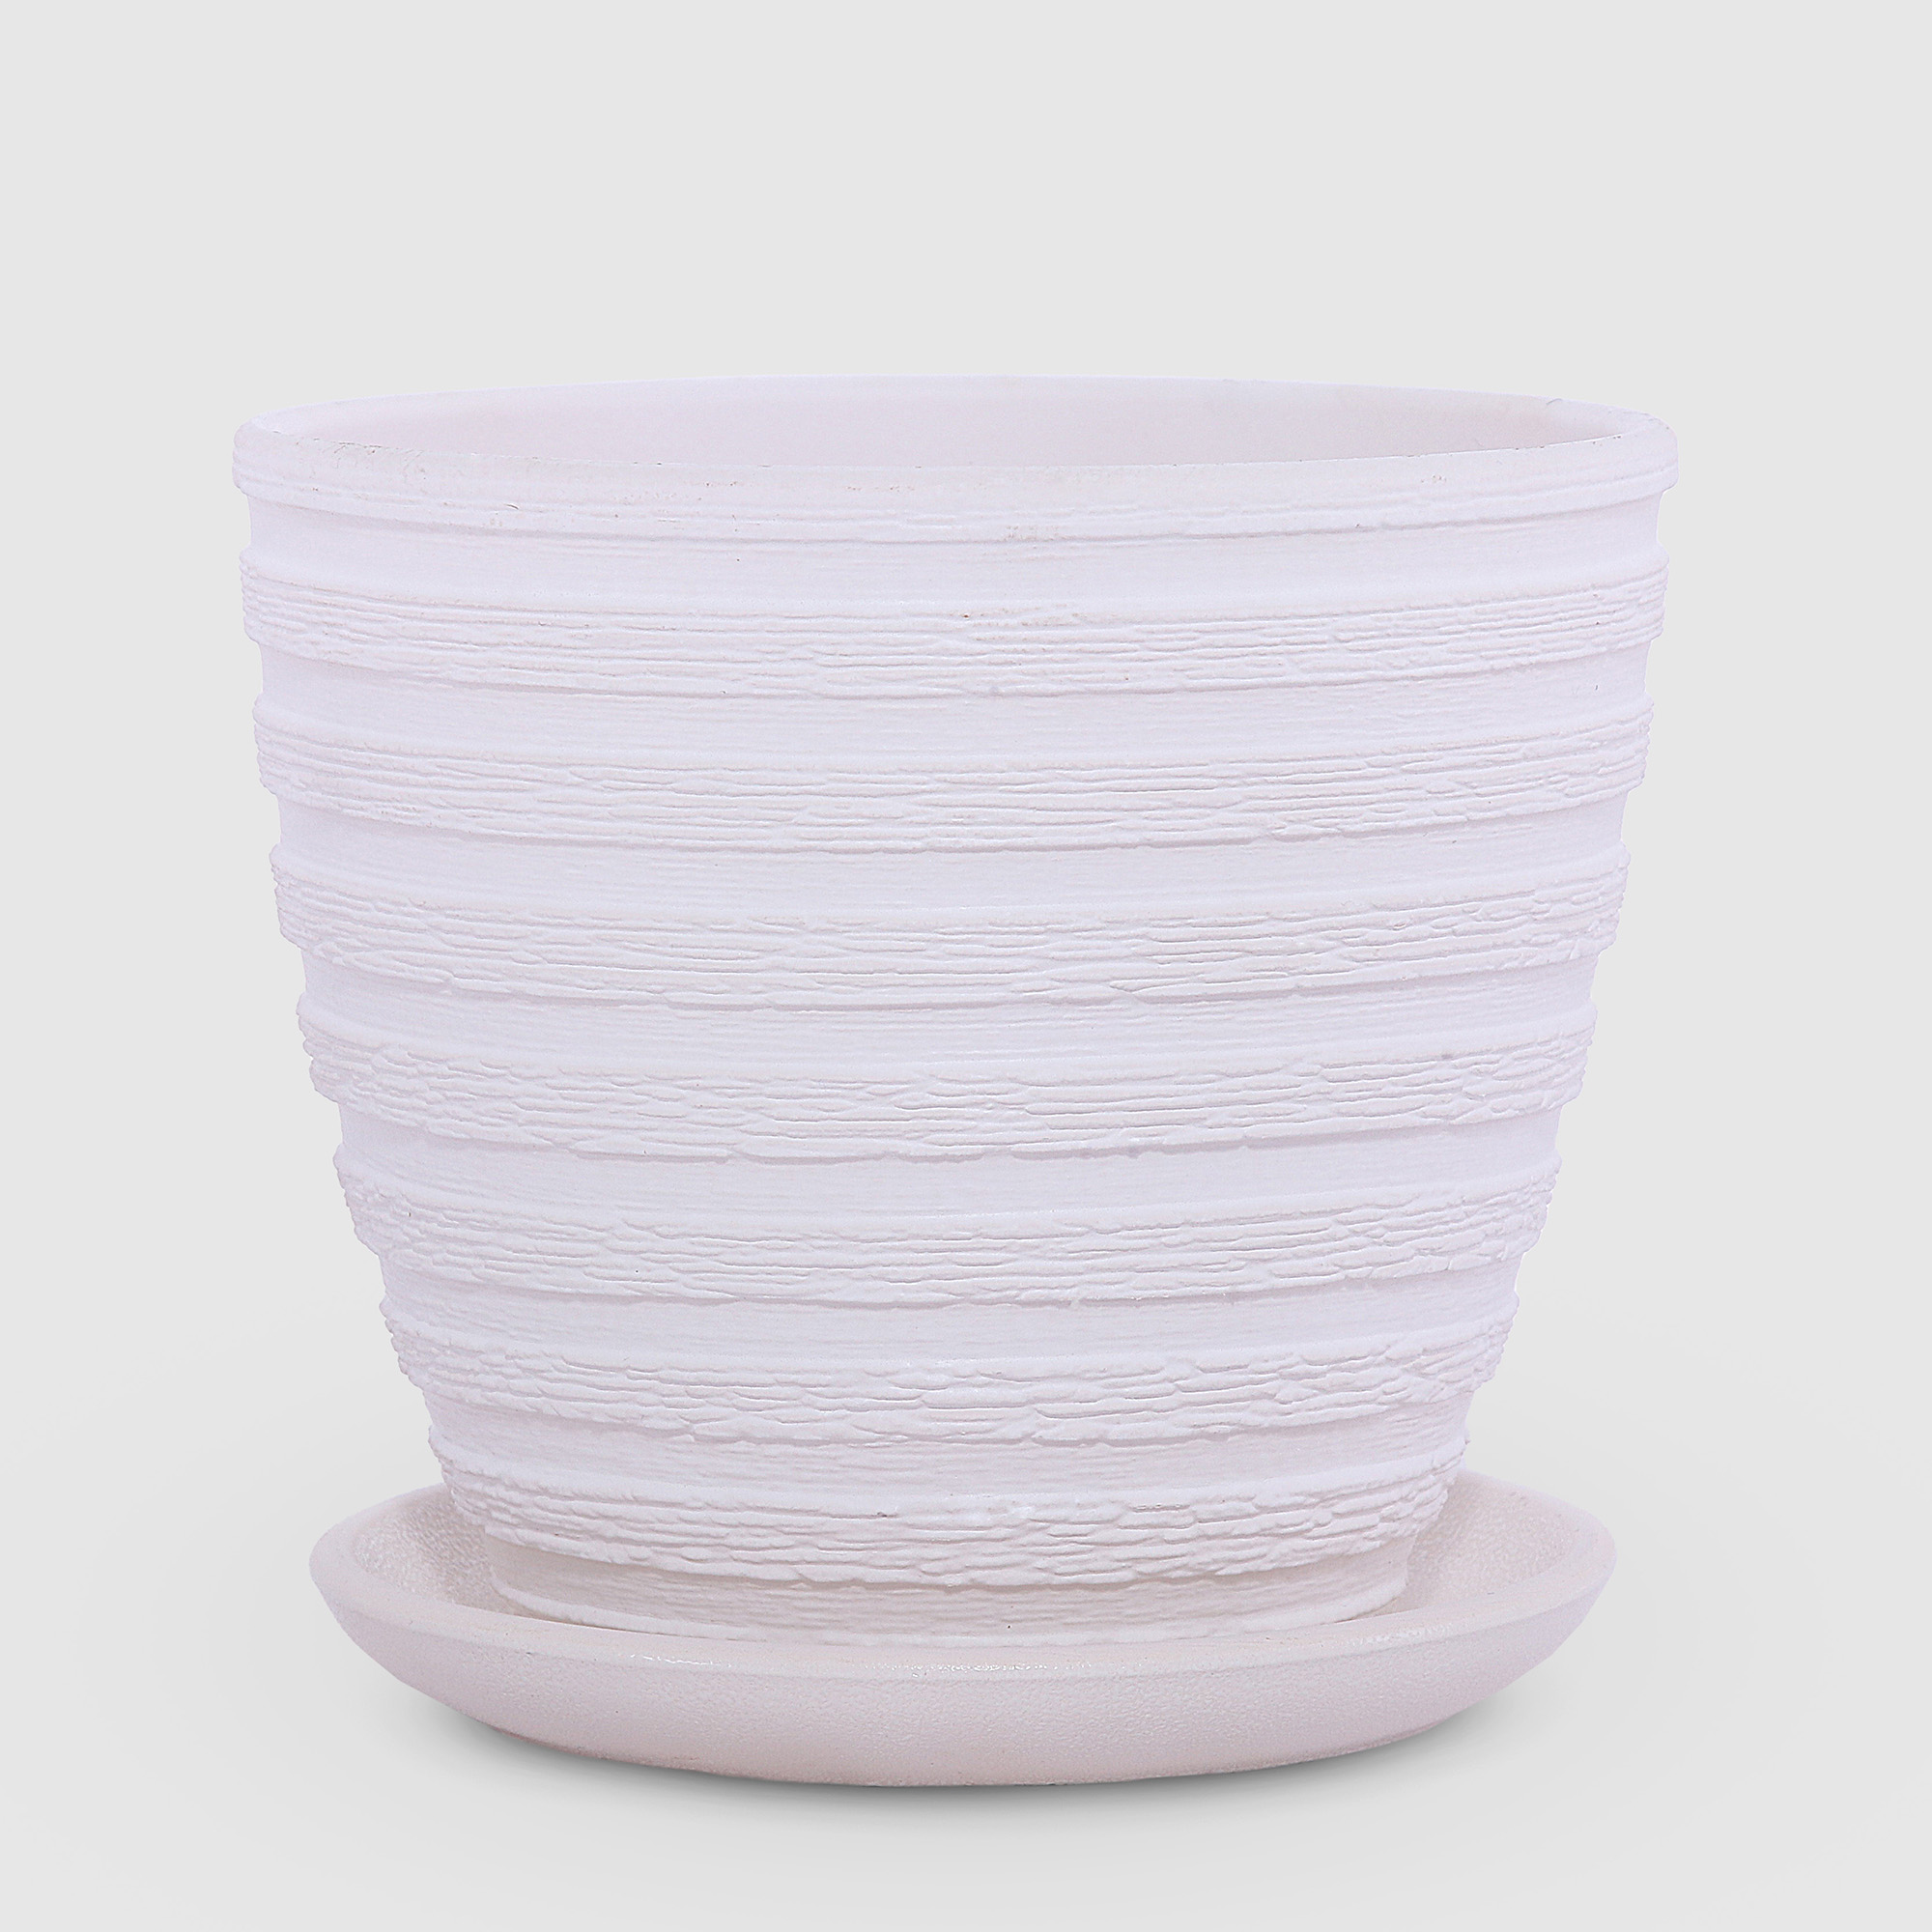 Керамический горшок с поддоном Композит Букле белый 18 см сушилка для посуды с поддоном 38×24×37 см белый